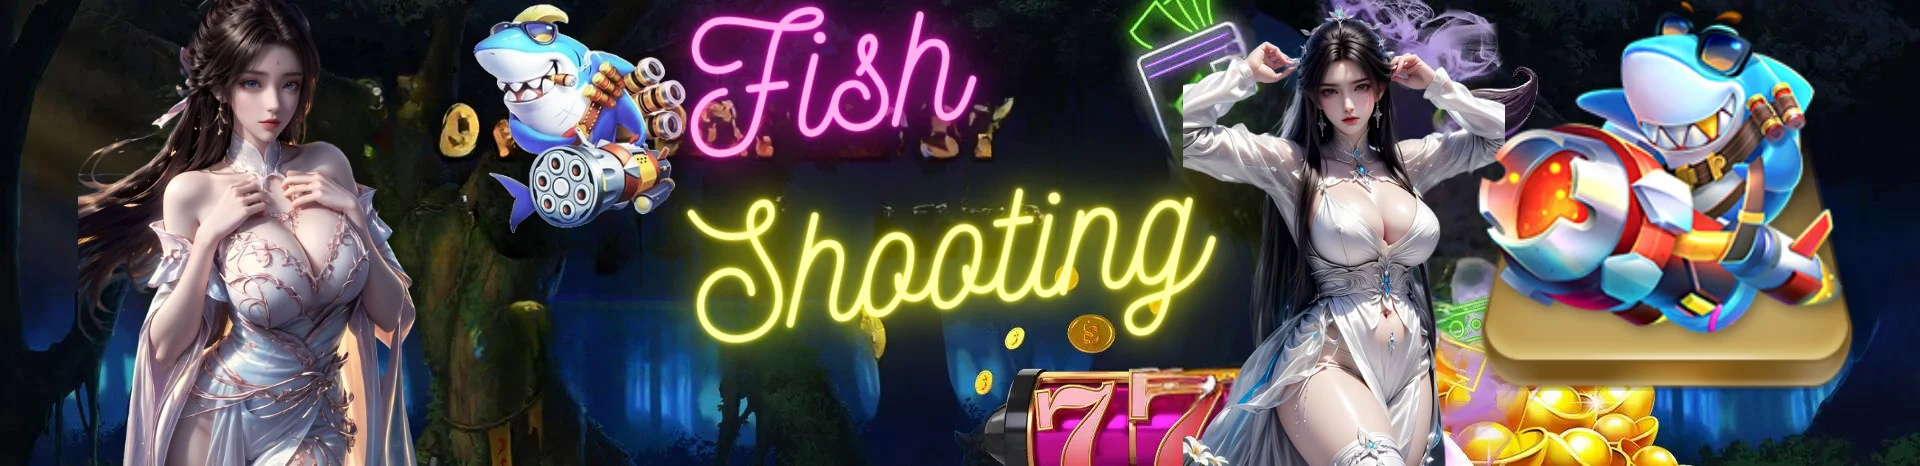 55JL fish shooting